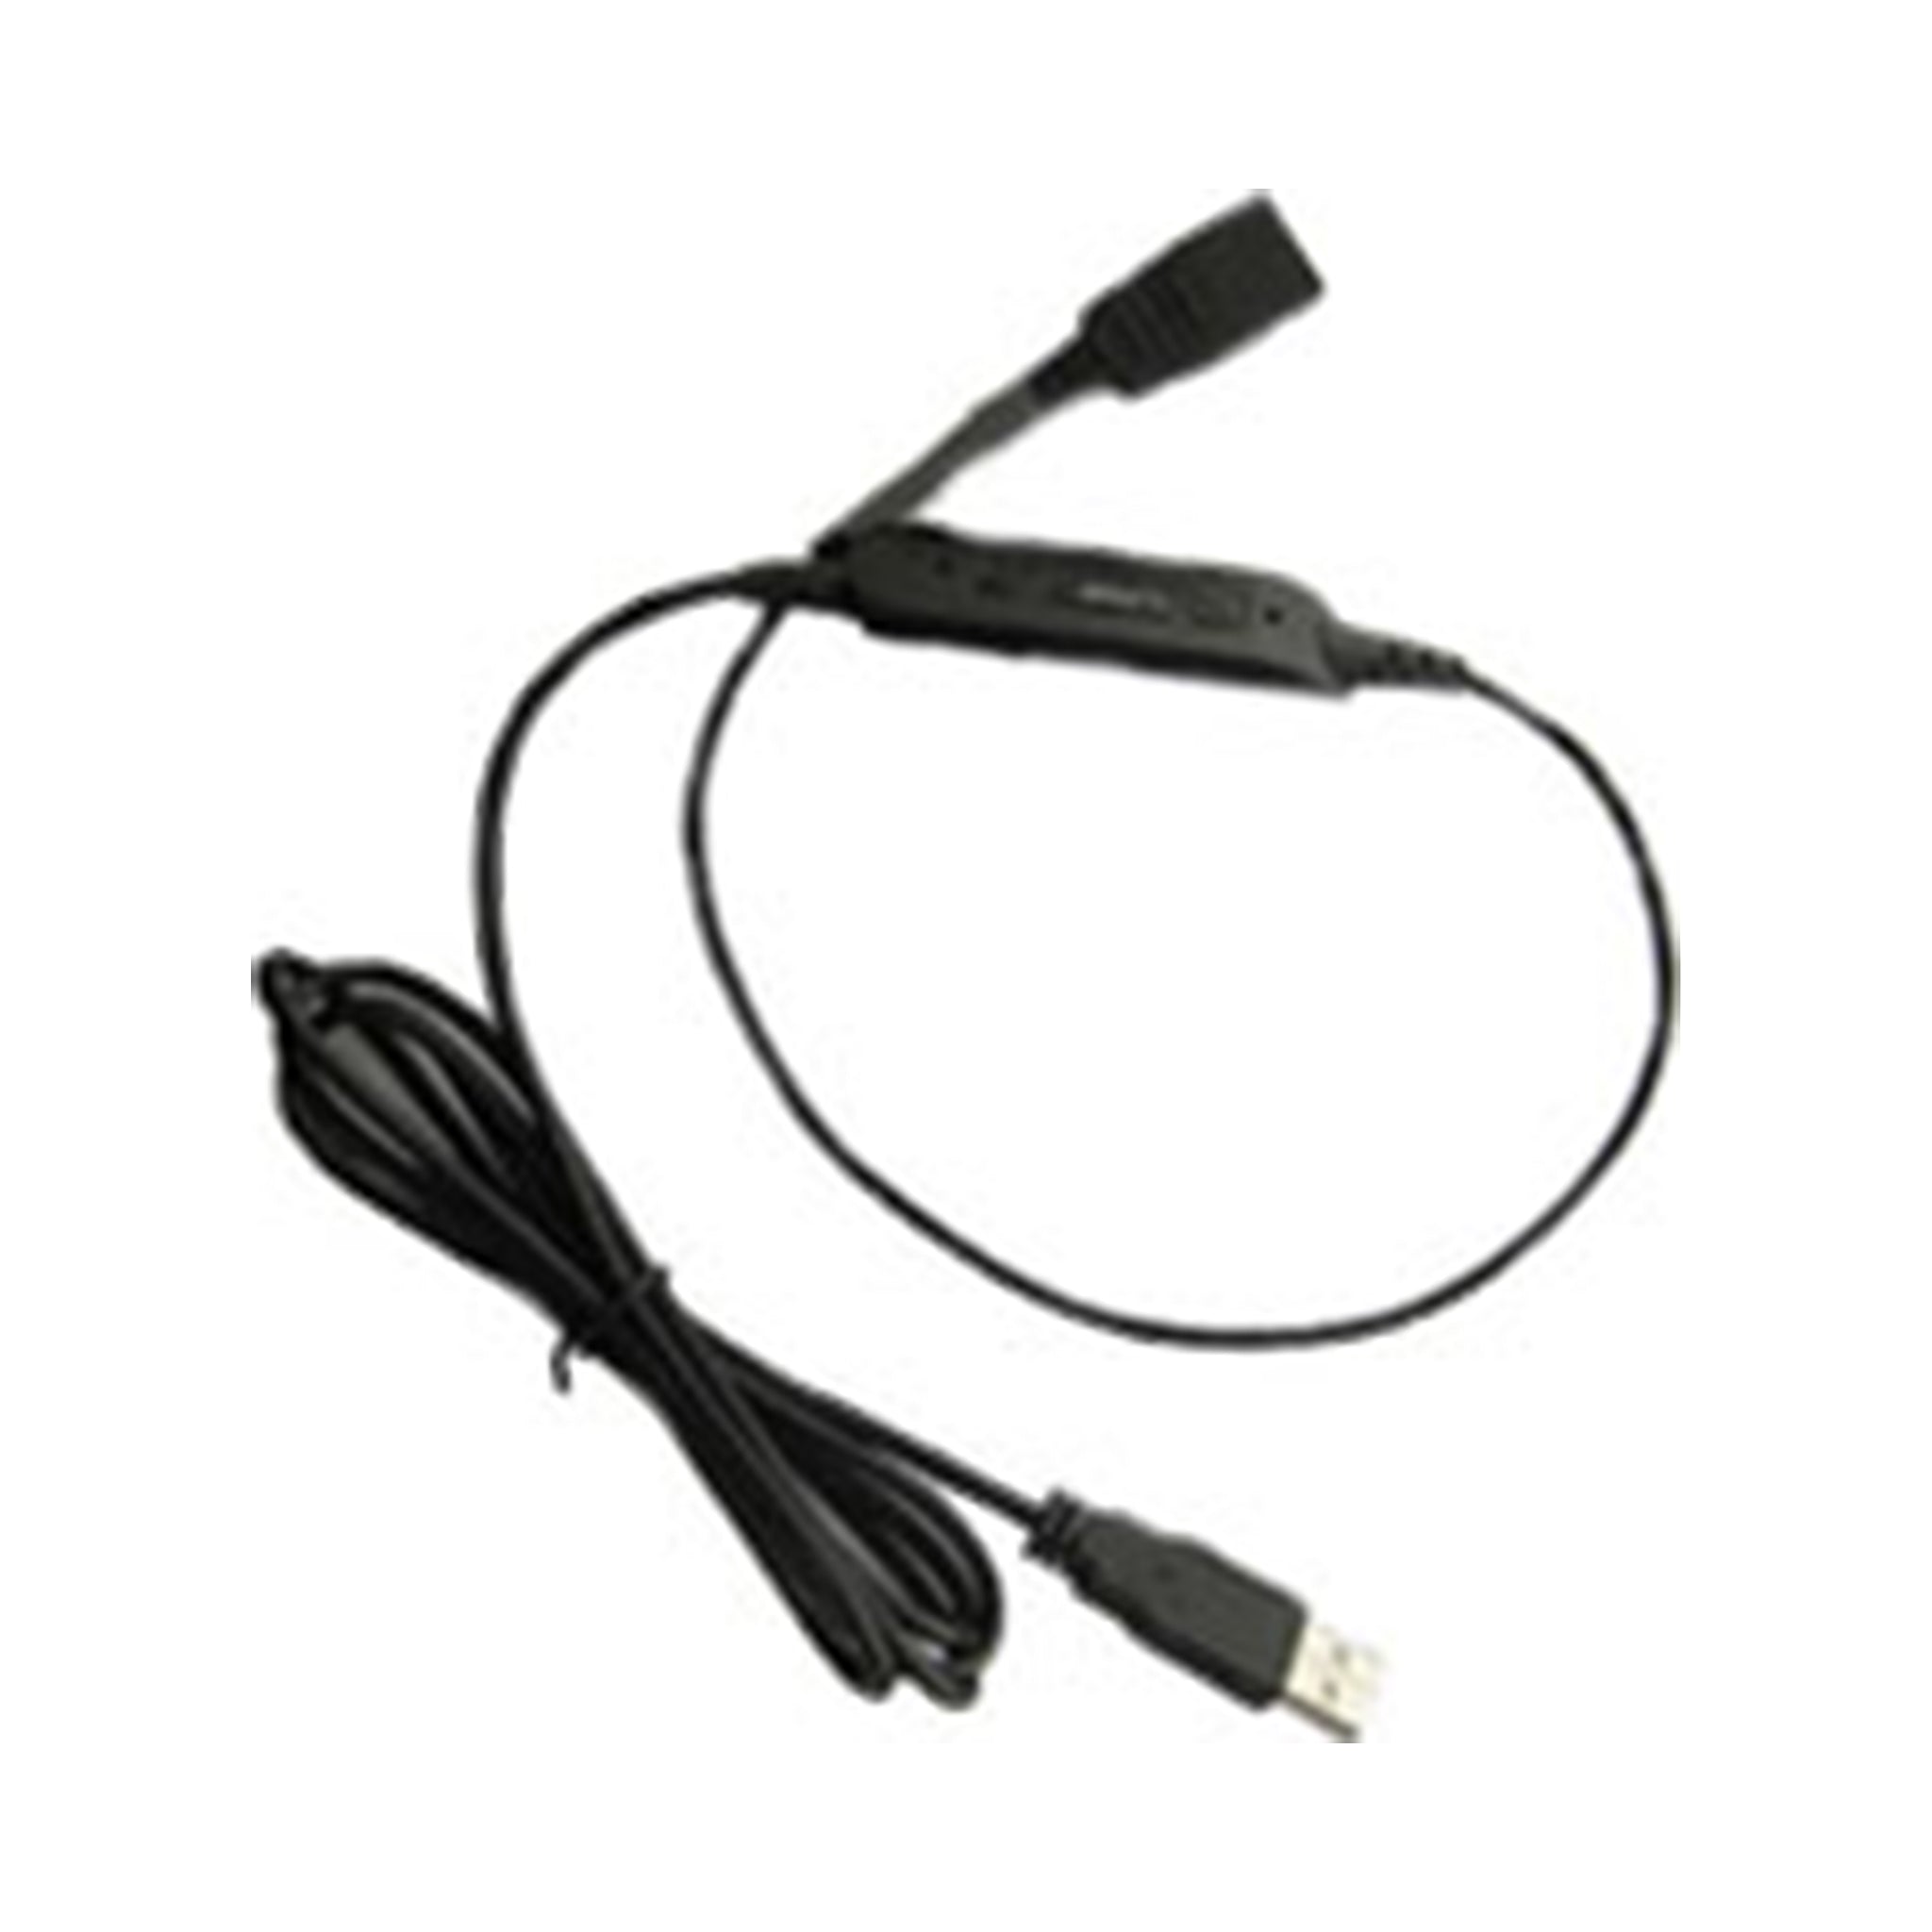 Vt Headset Convertor Qd-Usb Plug(03) * Qd-Usb Plug(03) - Headsets Accessories